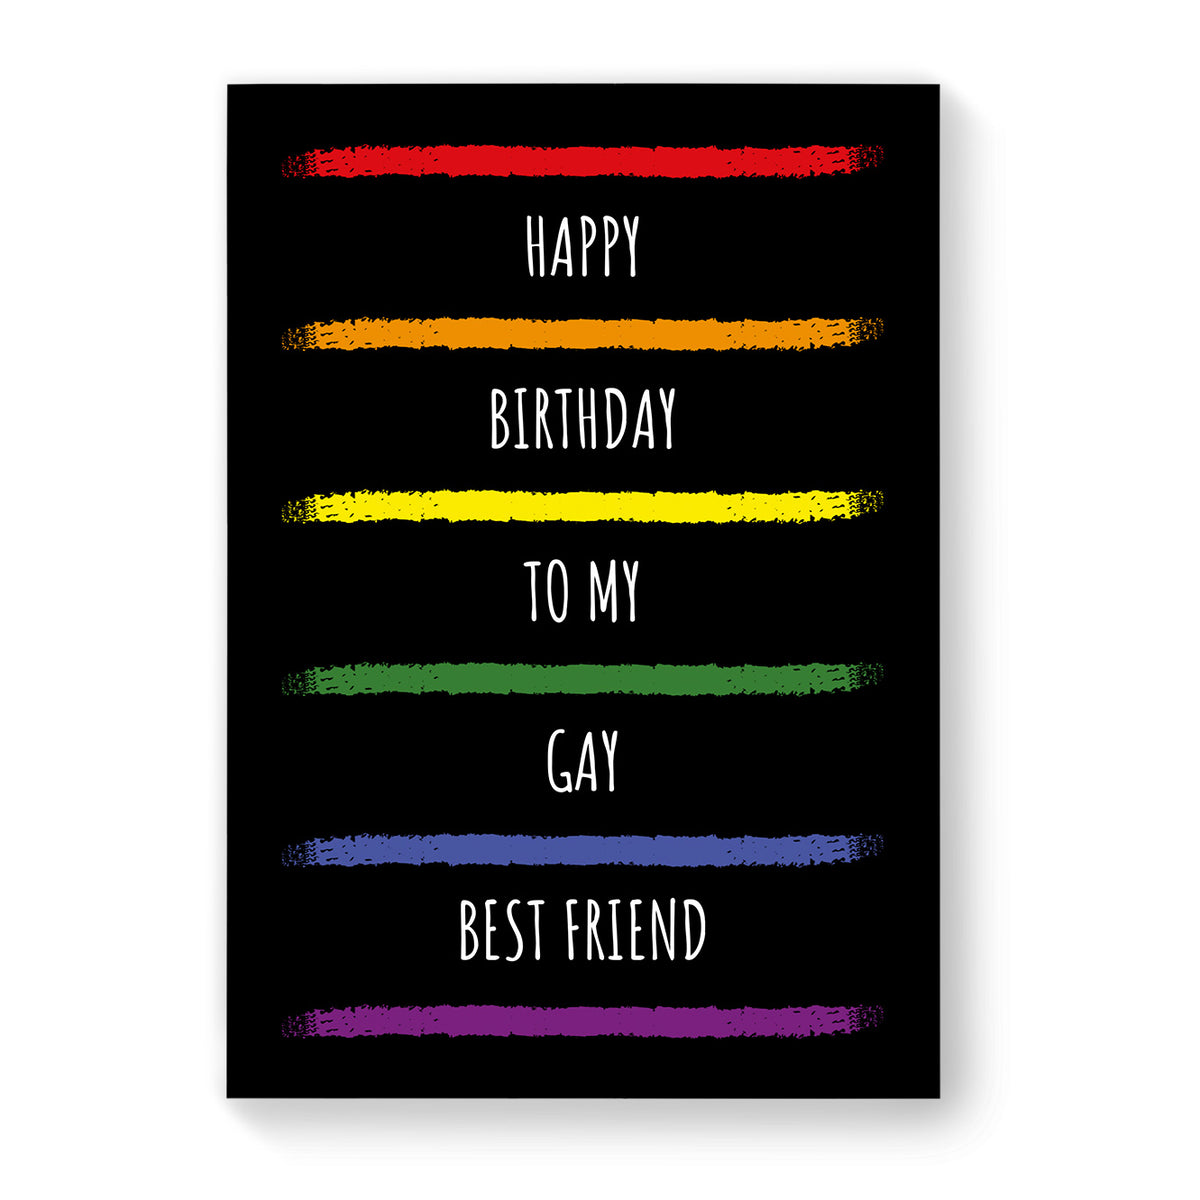 Happy Birthday to my Gay Best Friend - Lesbian Gay Birthday Card - Black Rainbow Stripes | Gift